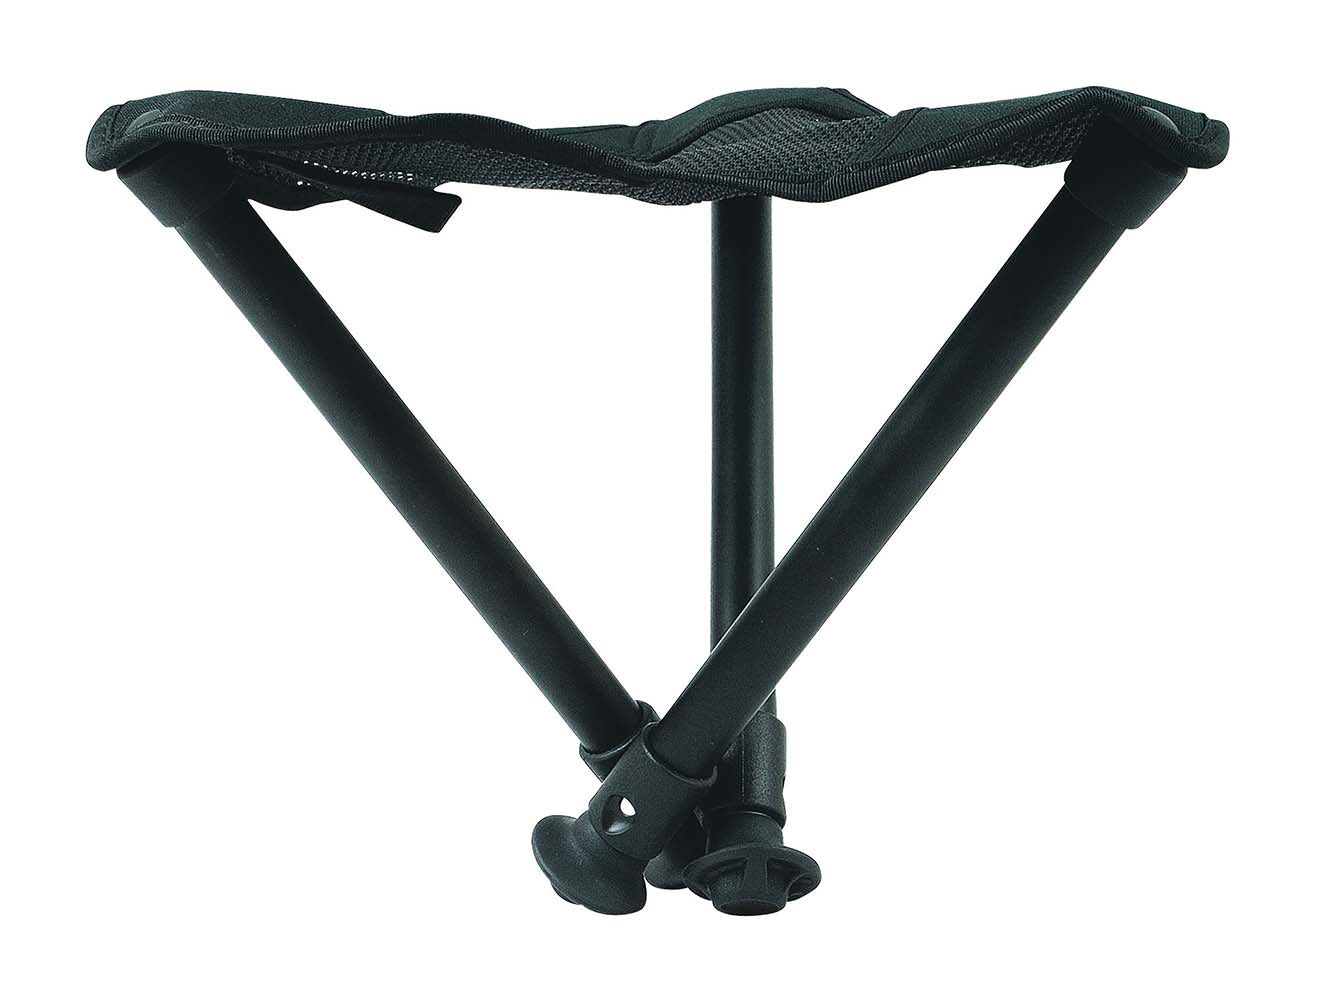 Walkstool 3-Poots Krukje Comfort 55 cm Verstelbaar Zwart